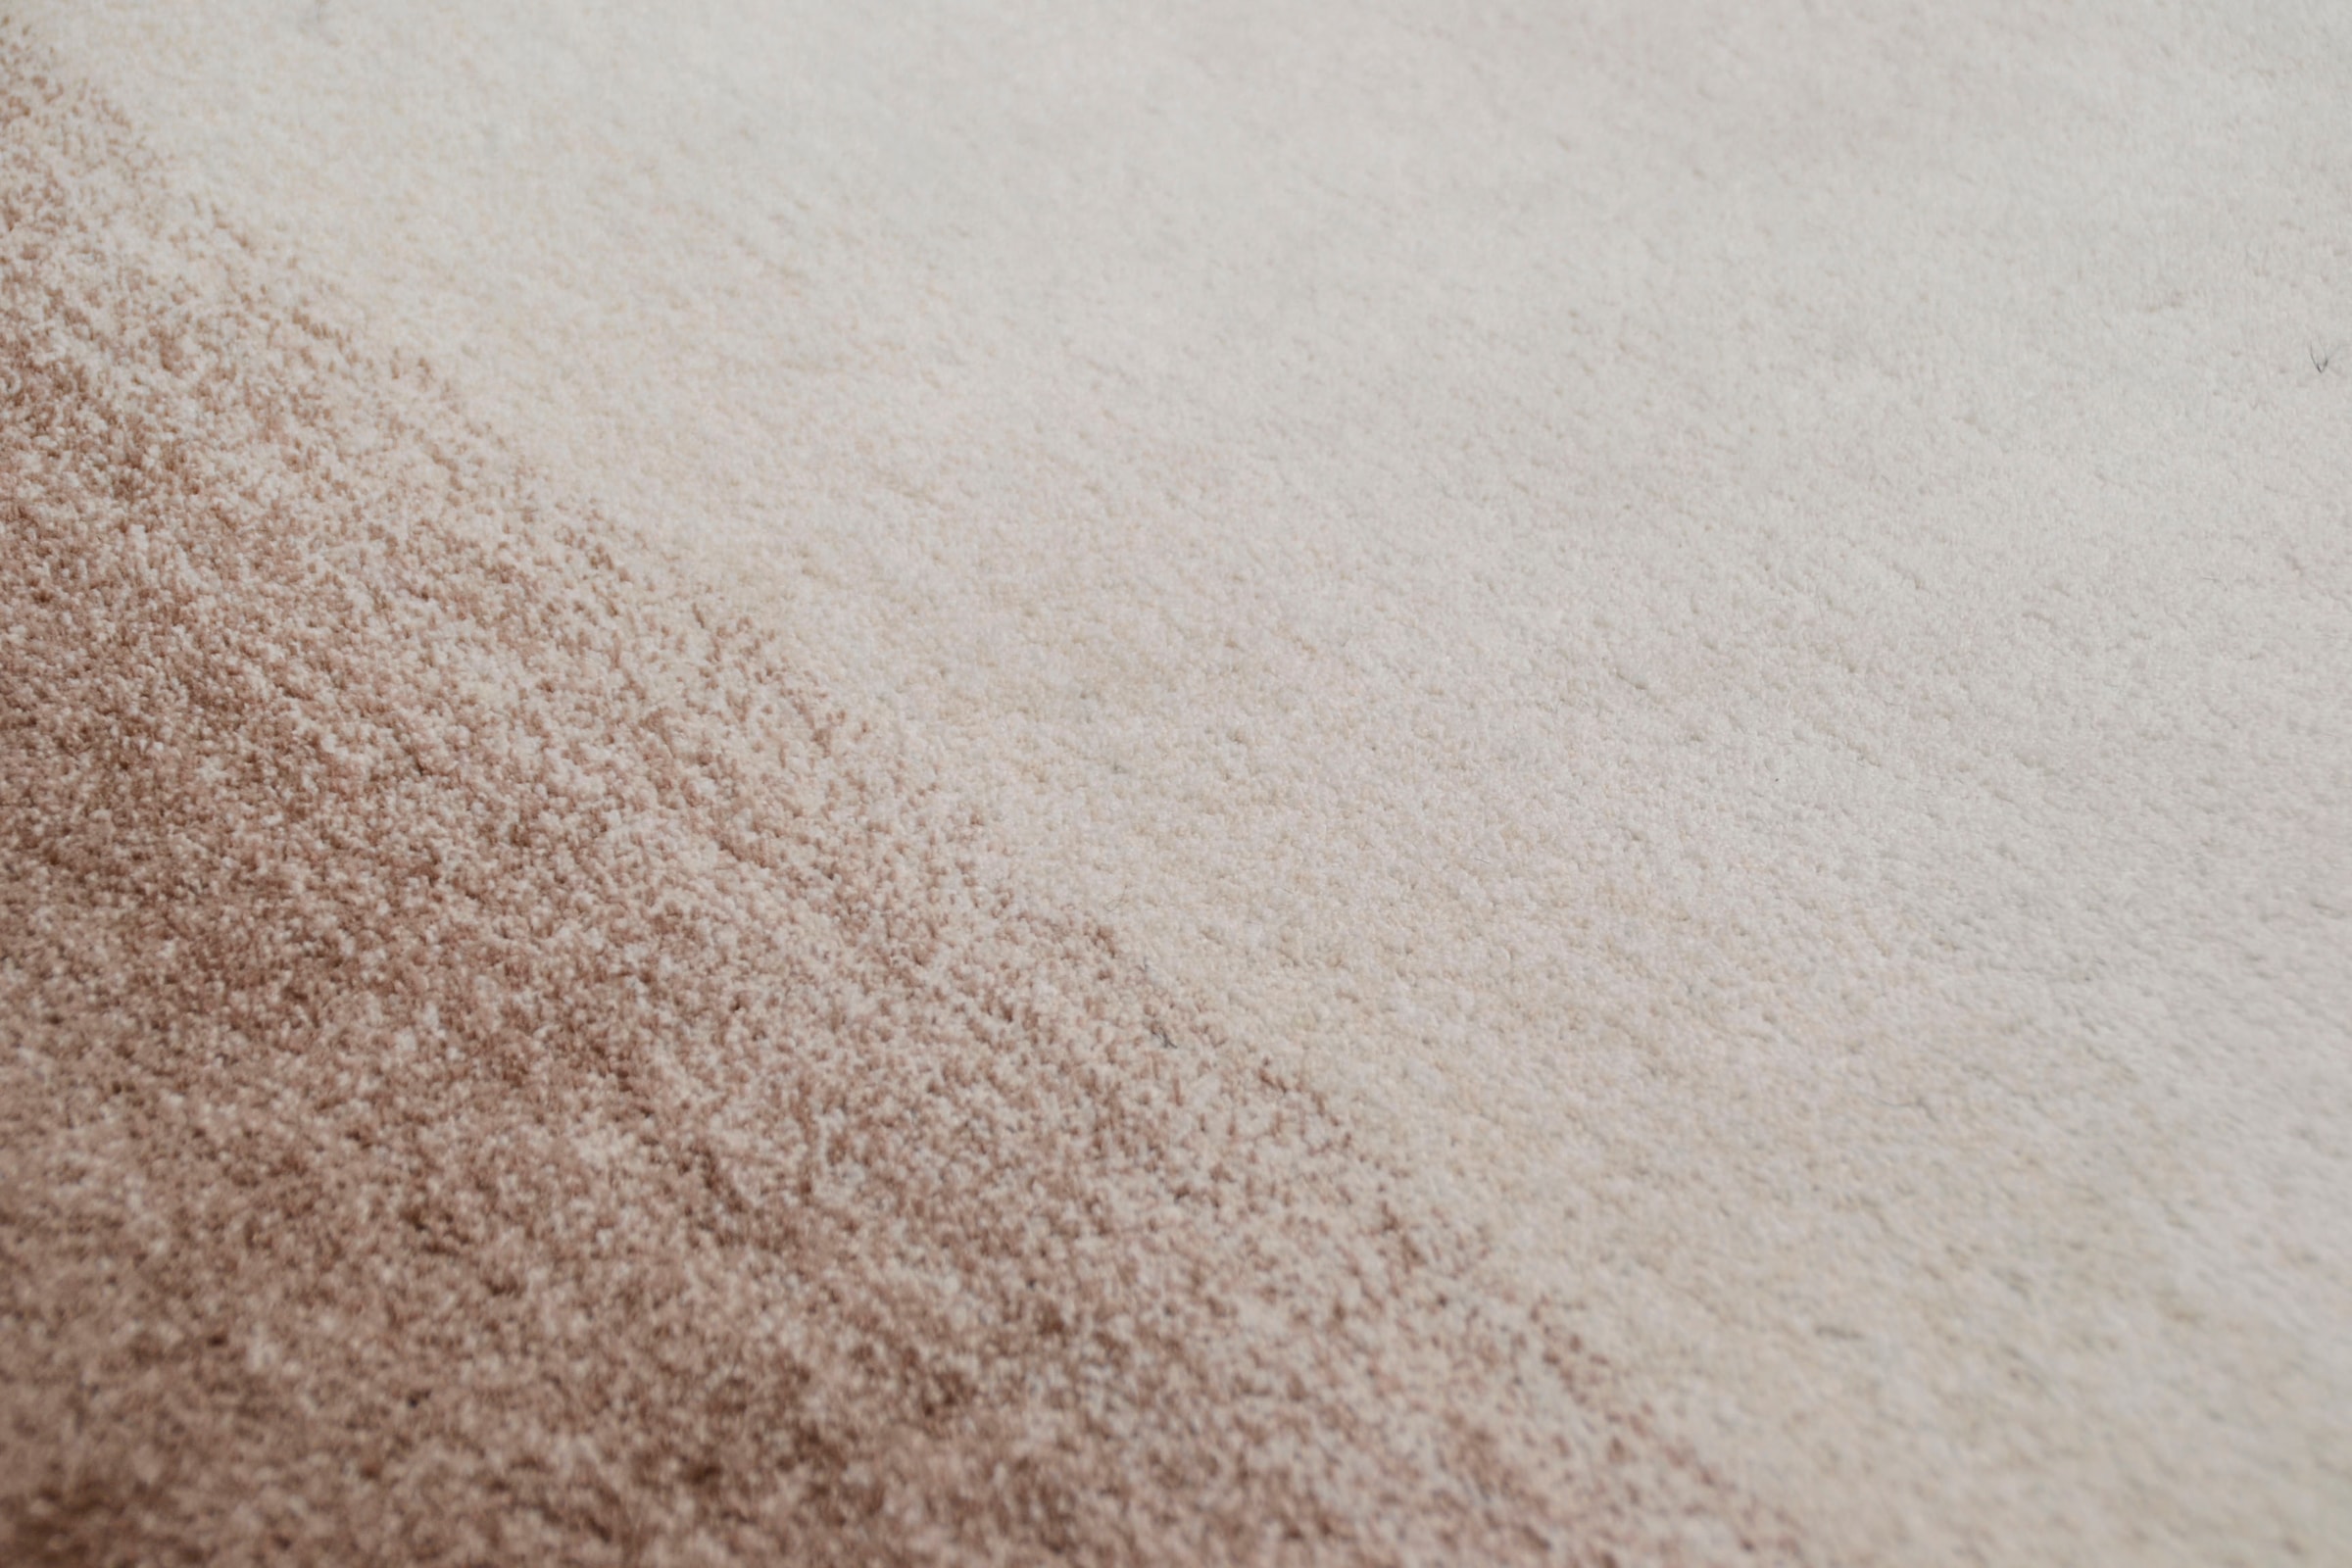 THEKO Teppich »Hula«, rechteckig, besonders weich durch Microfaser, ideal im Wohnzimmer & Schlafzimmer